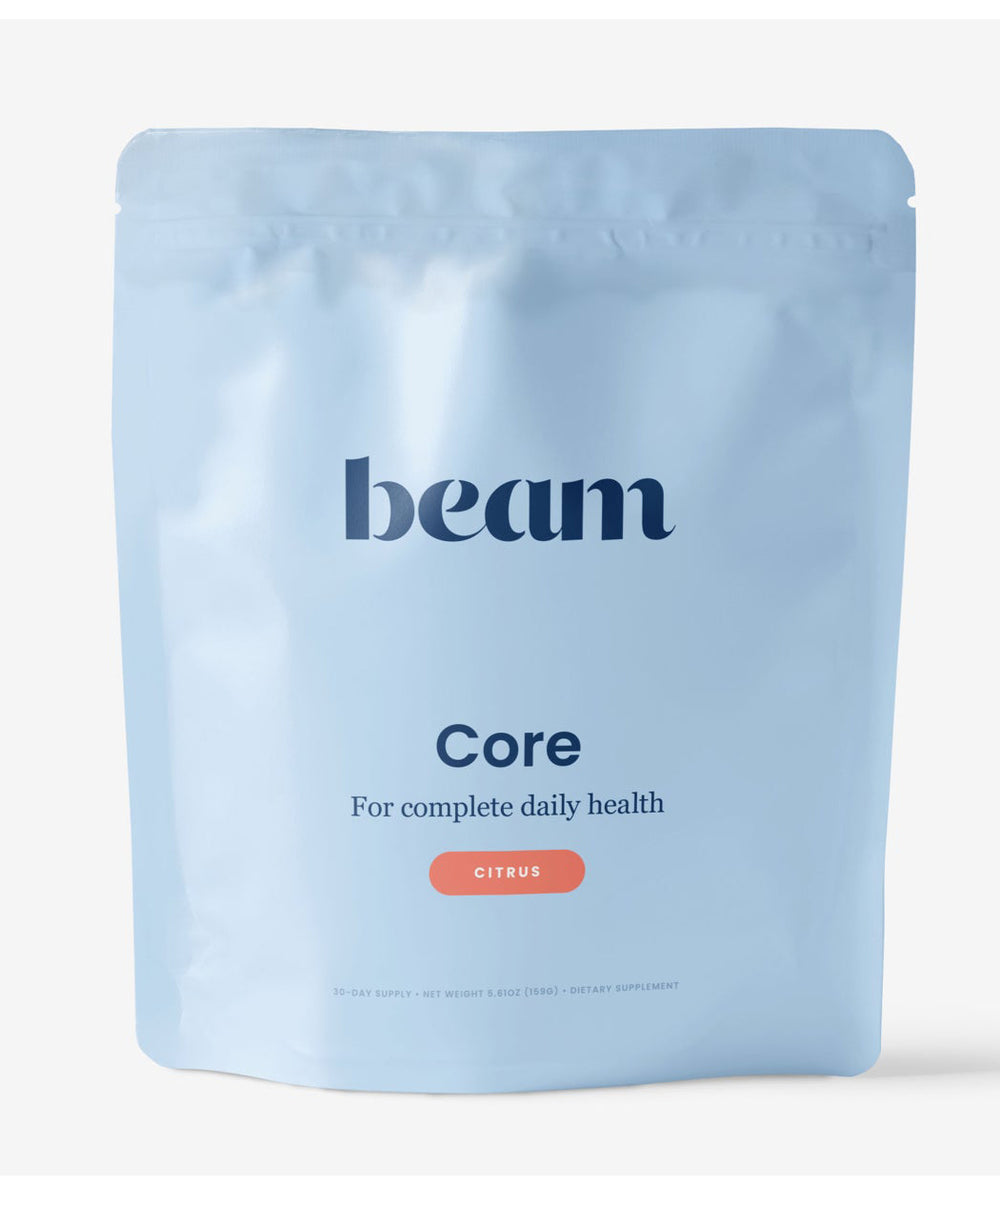 Beam Core